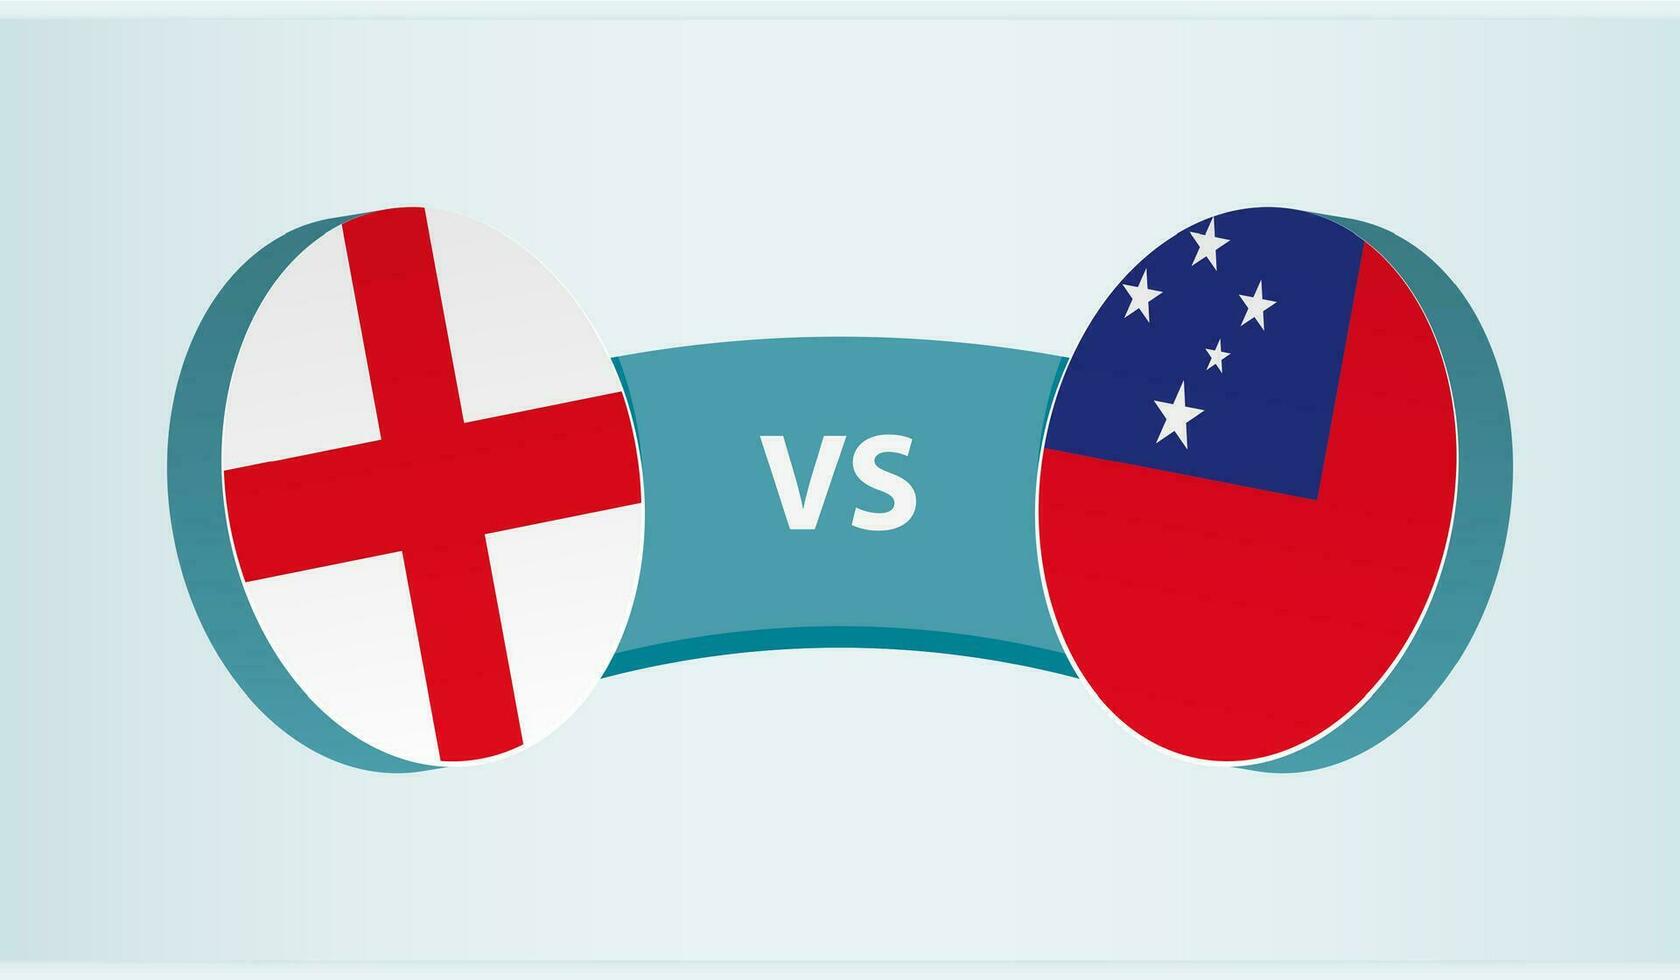 England mot samoa, team sporter konkurrens begrepp. vektor